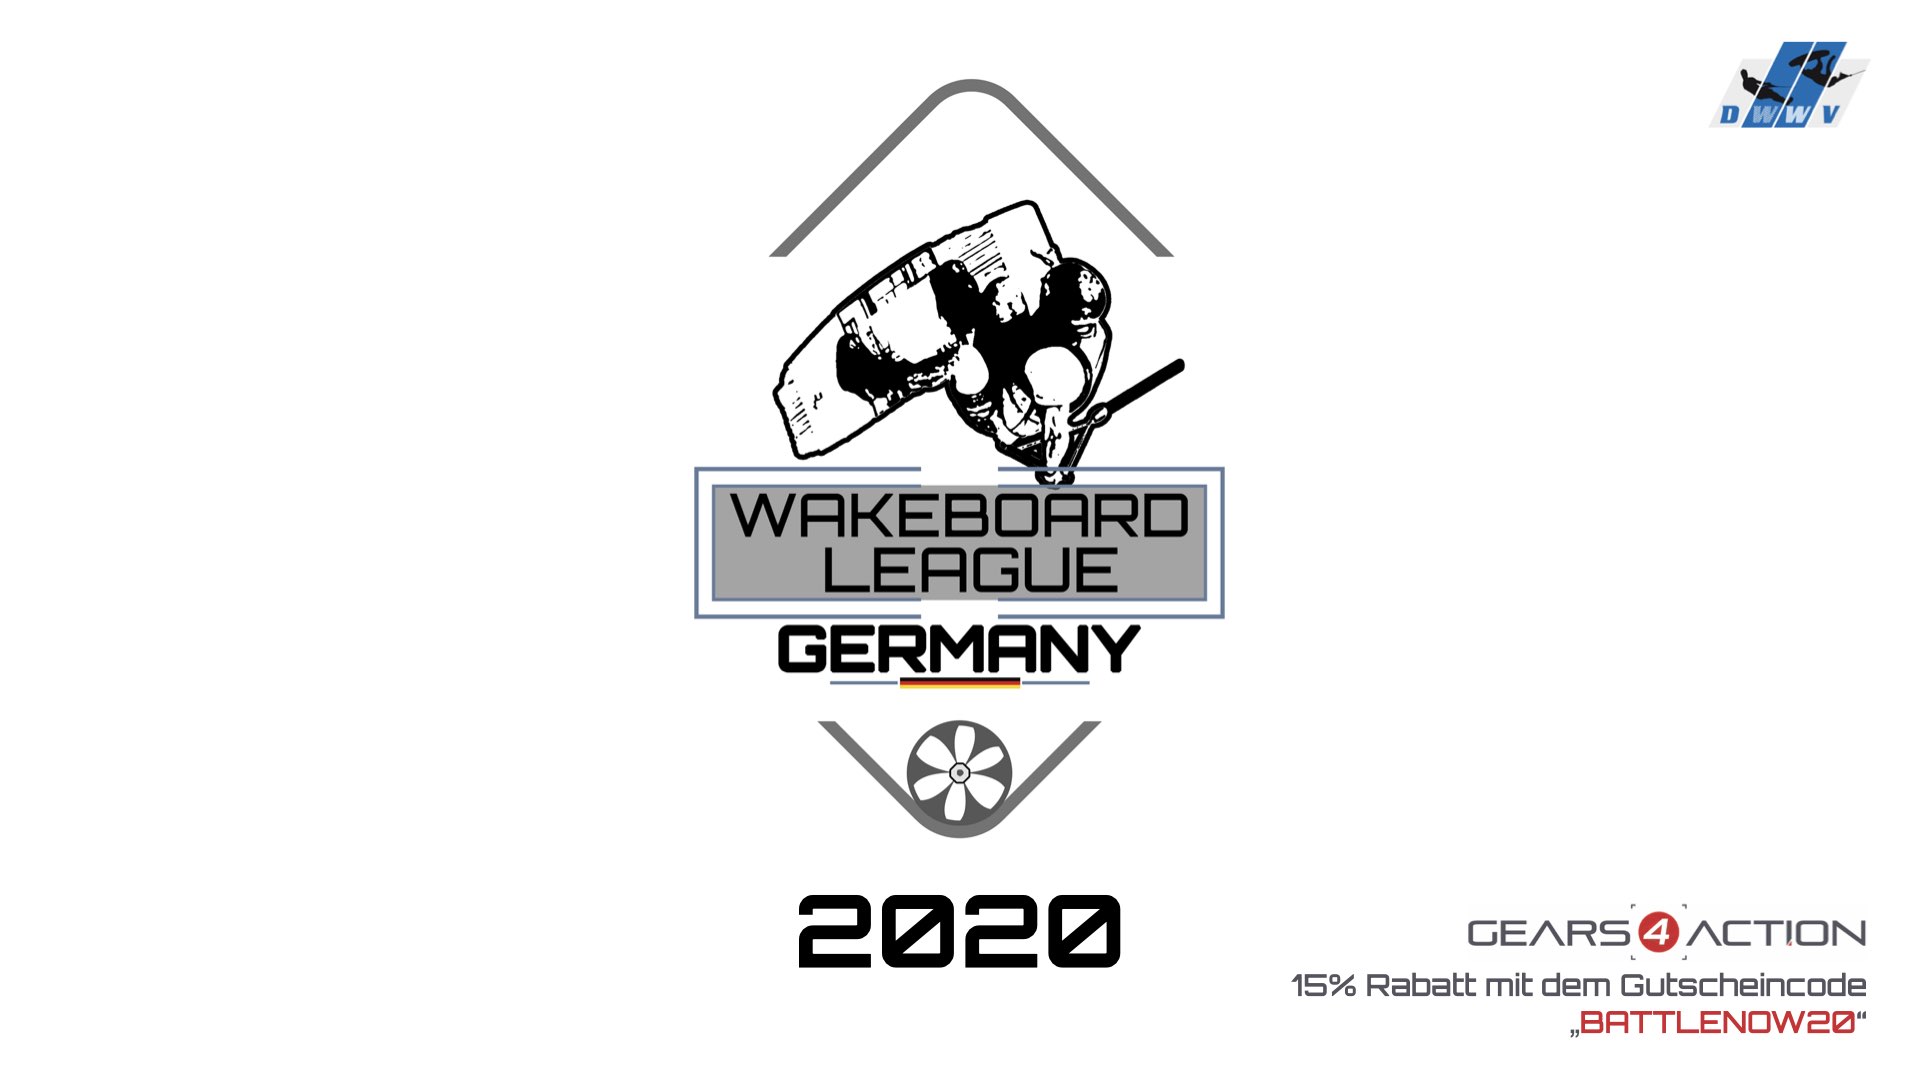 DWWV Wakeboard League Germany - Battle 10 - Best Invert